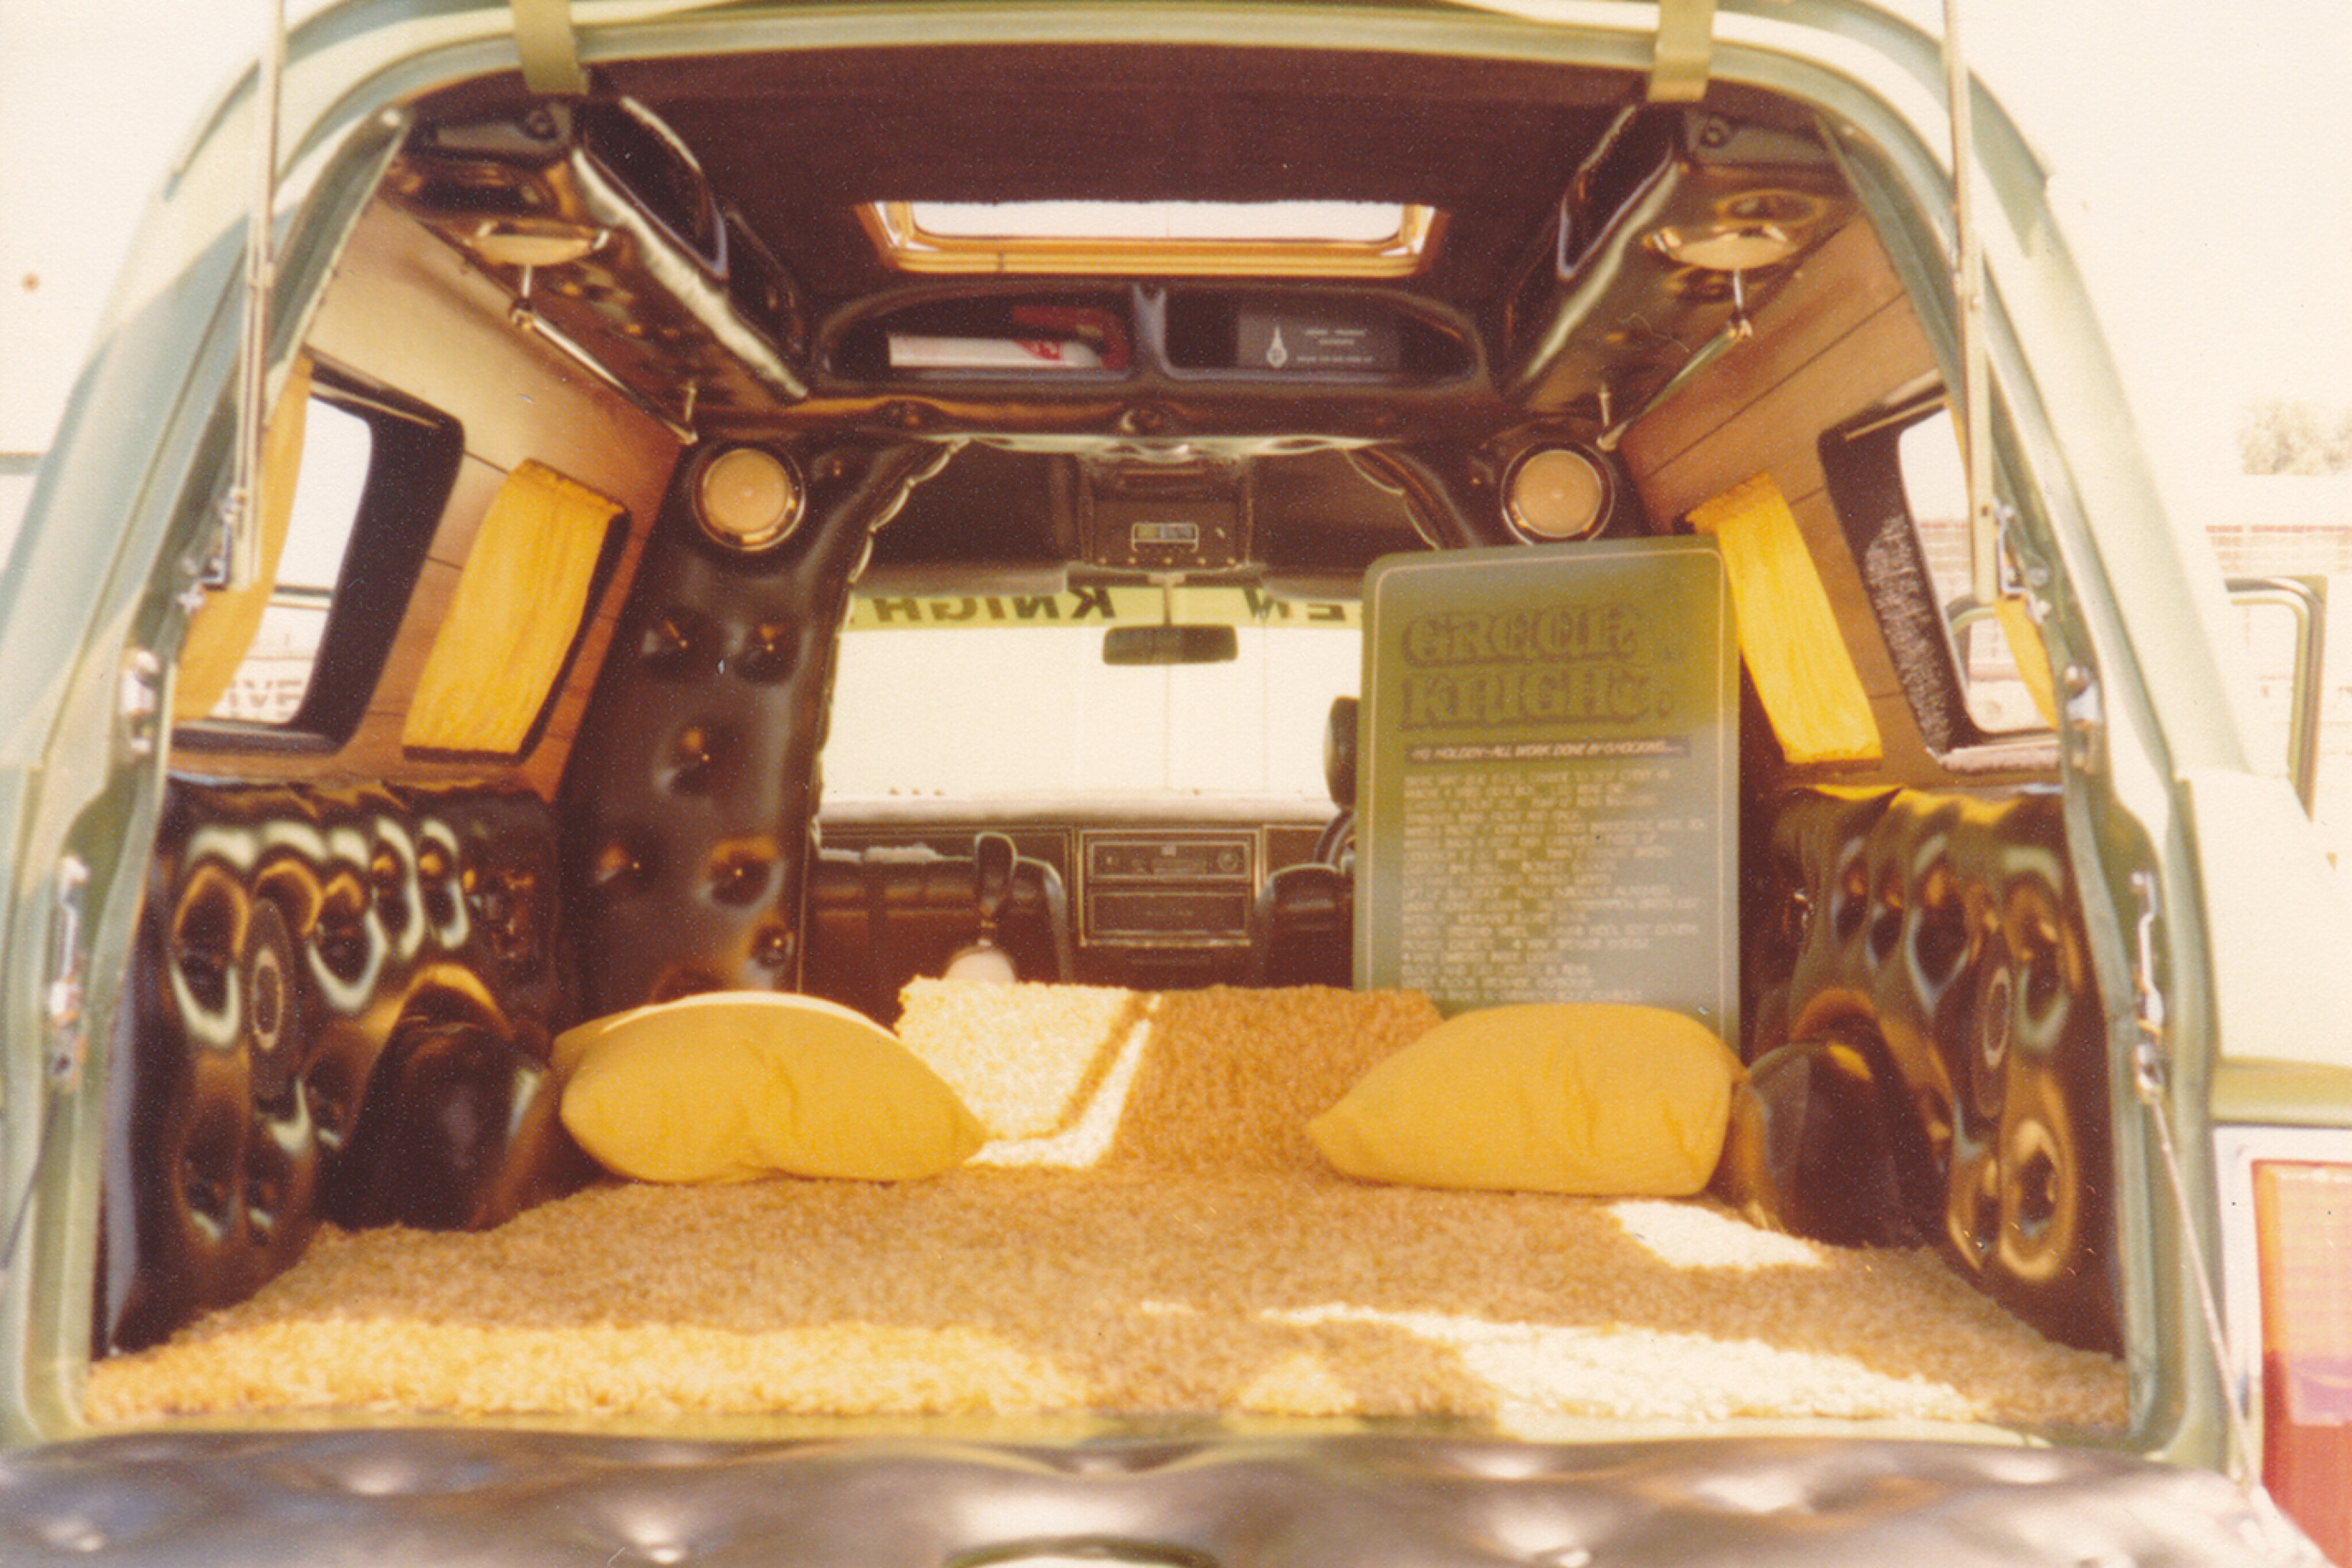 2cf4171e/green knight hg panelvan interior rear jpg